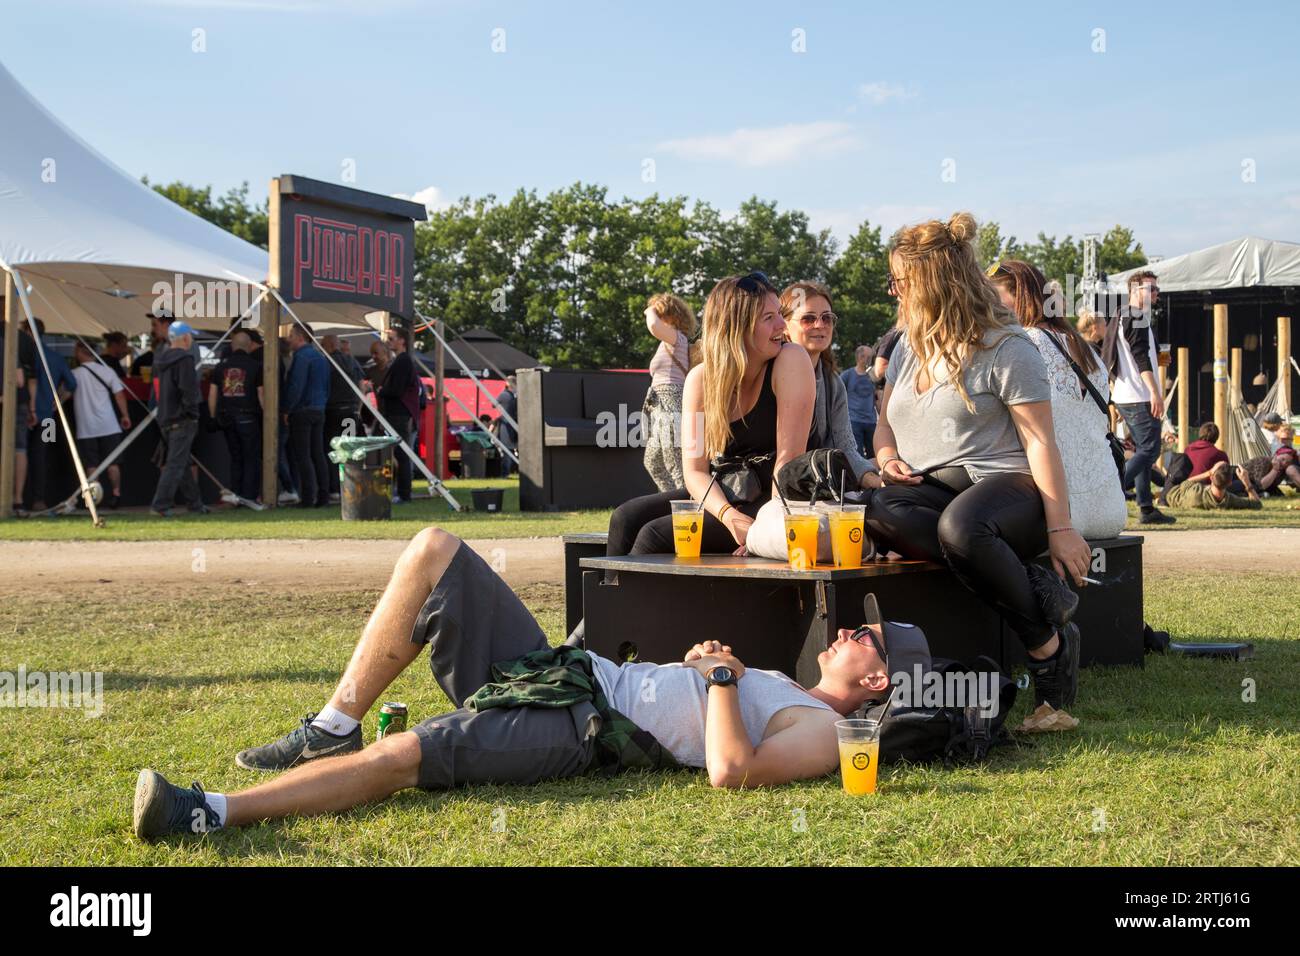 Roskilde, Dinamarca, 29 de junio de 2016: Gente hablando y disfrutando del sol en un bar en el Festival Roskilde Foto de stock